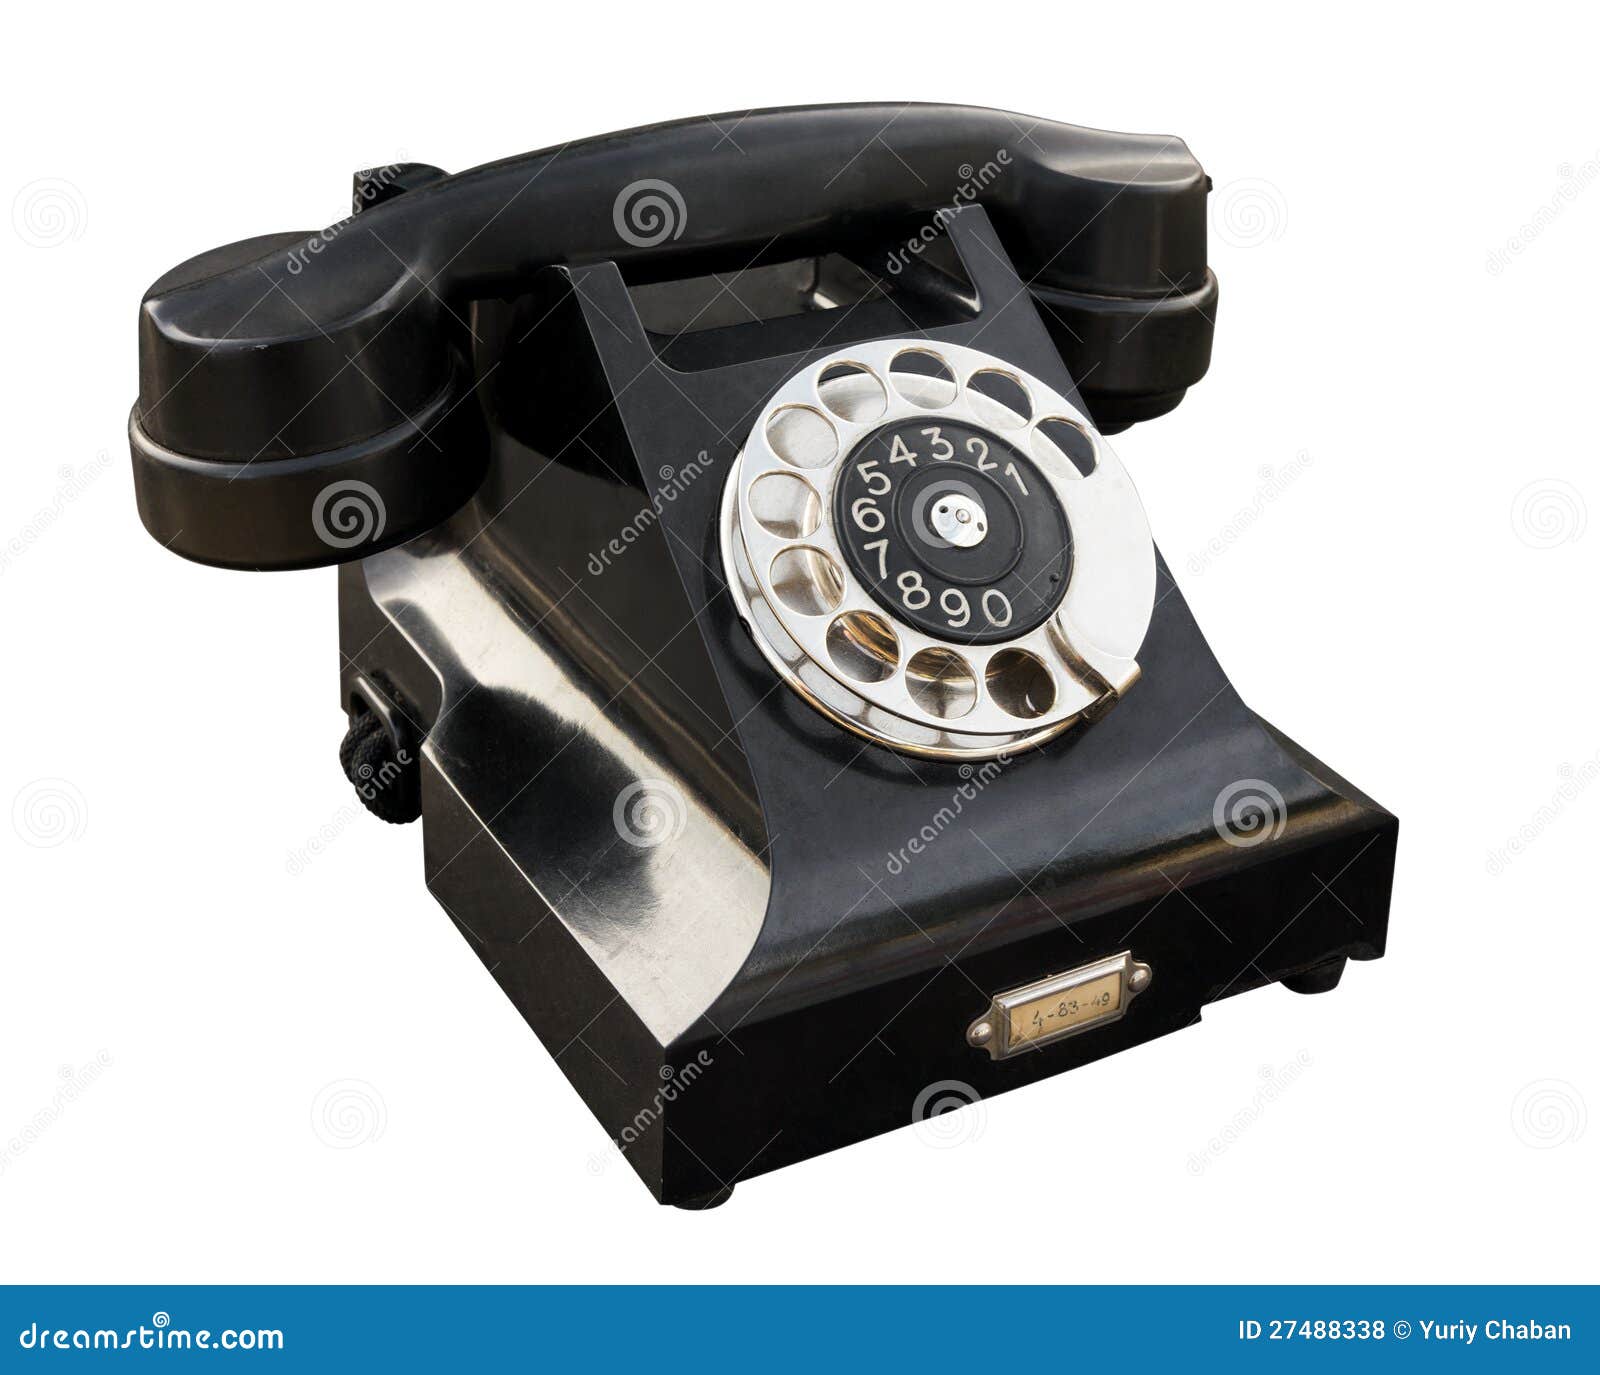 Где найти старый телефон. Старый телефон. Фото старого телефона для визитки. Как найти старый телефон. Фото старого телефона с наборником.